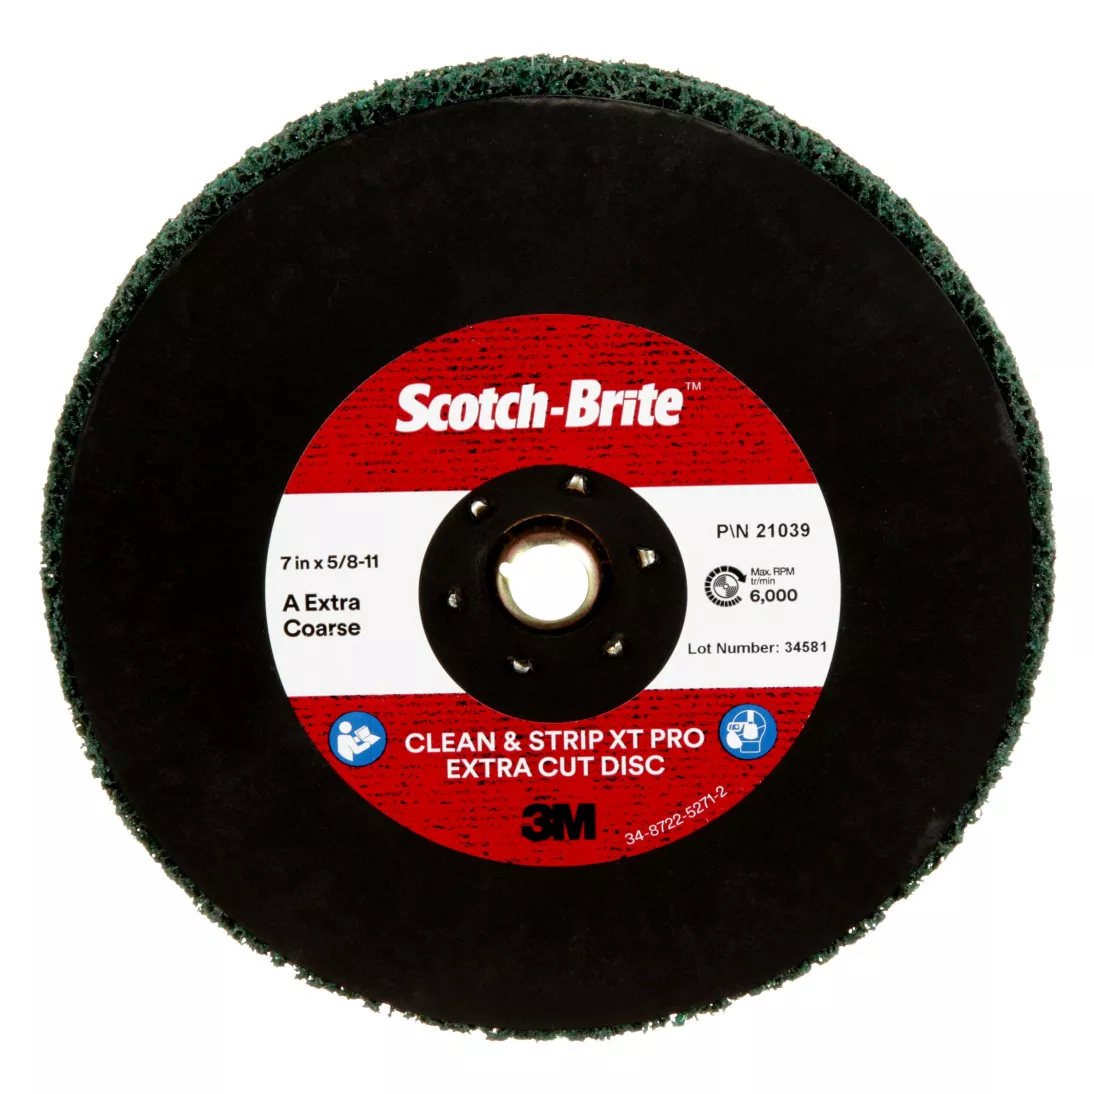 Scotch-Brite™ Clean and Strip XT Pro Extra Cut Disc, CX-DN, A/O Extra
Coarse, TN, Green, 7 in x 5/8